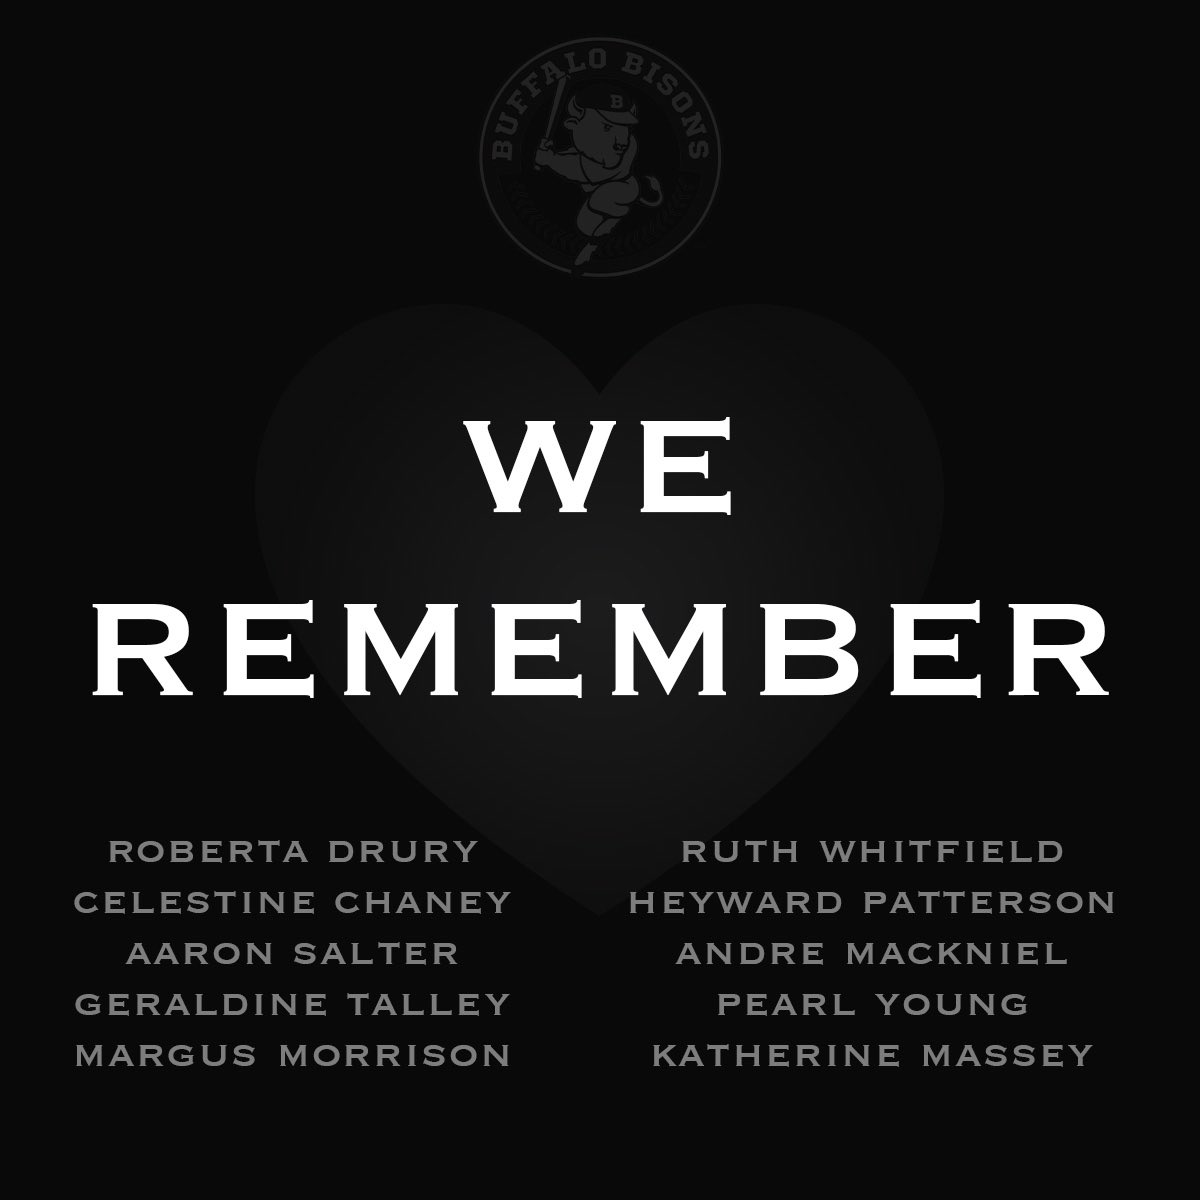 We remember.